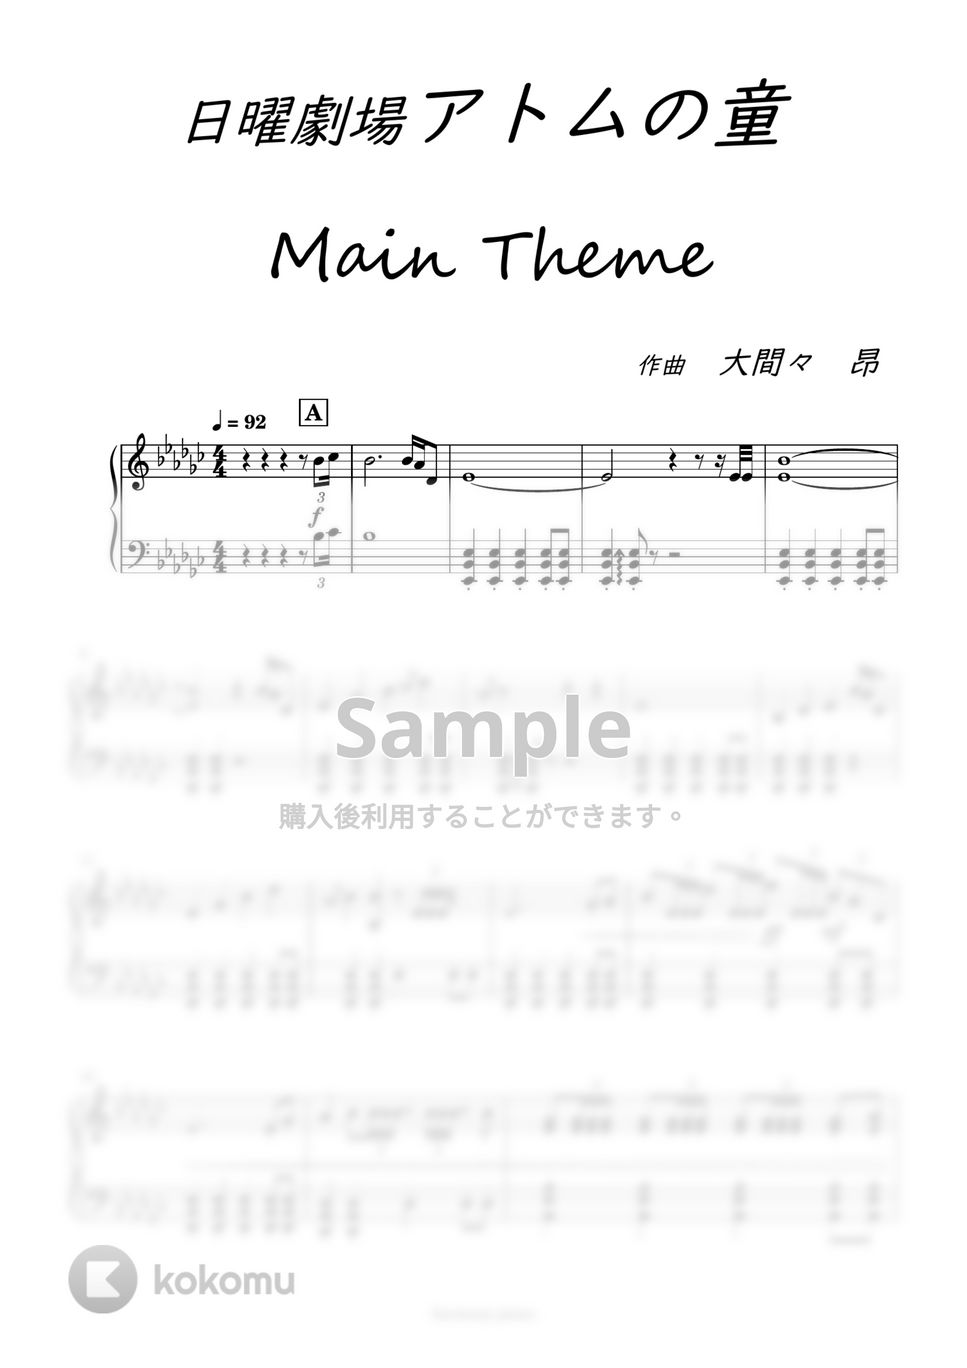 アトムの童 - メインテーマ by harmony piano